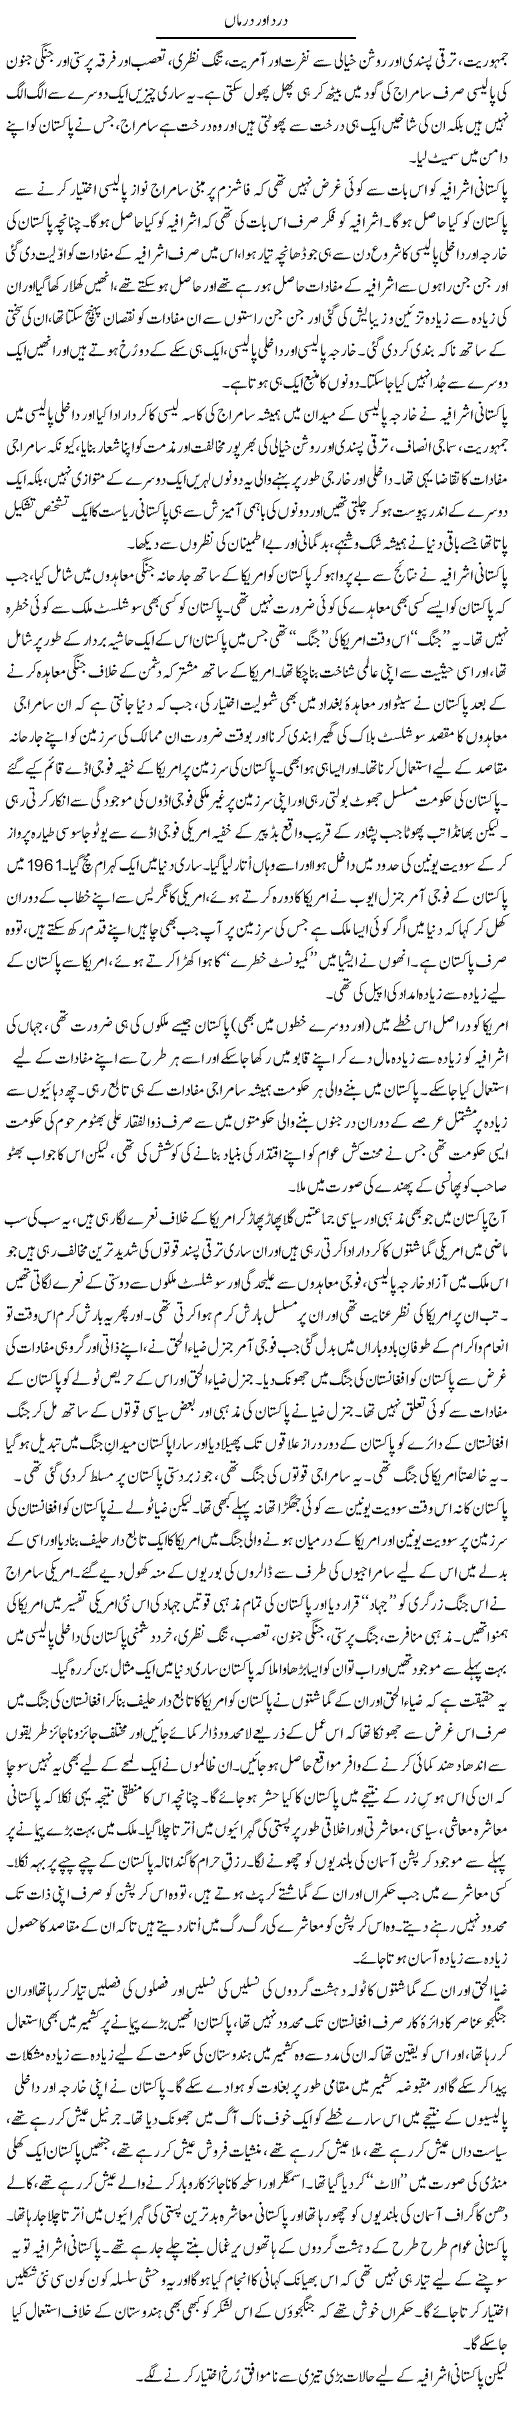 Problems of Pakistan Express Column Anwar Ahsan 4 October 2011